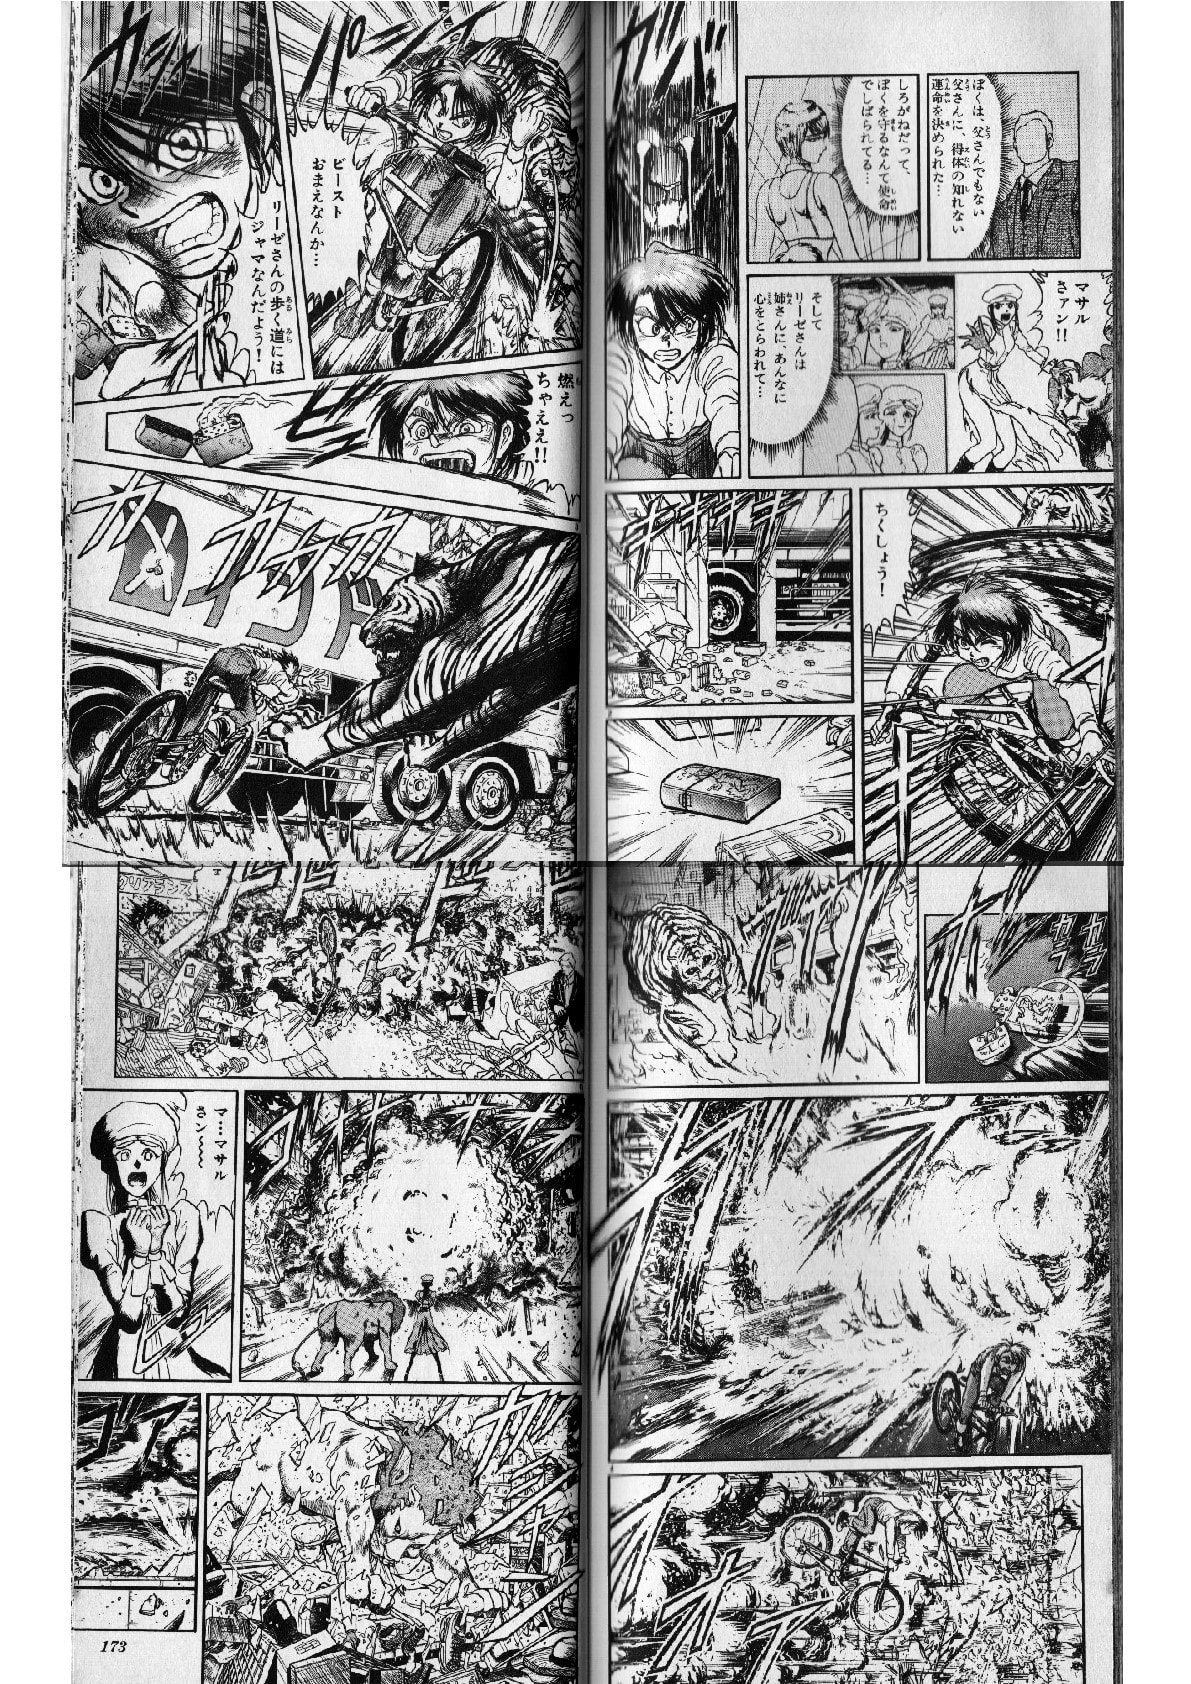 からくりサーカス マサルの得意な環境利用型戦闘術は刃牙のガイア並 個人的に気に入った漫画だったり 書籍だったりを気まぐれで紹介するモトブログおじさん